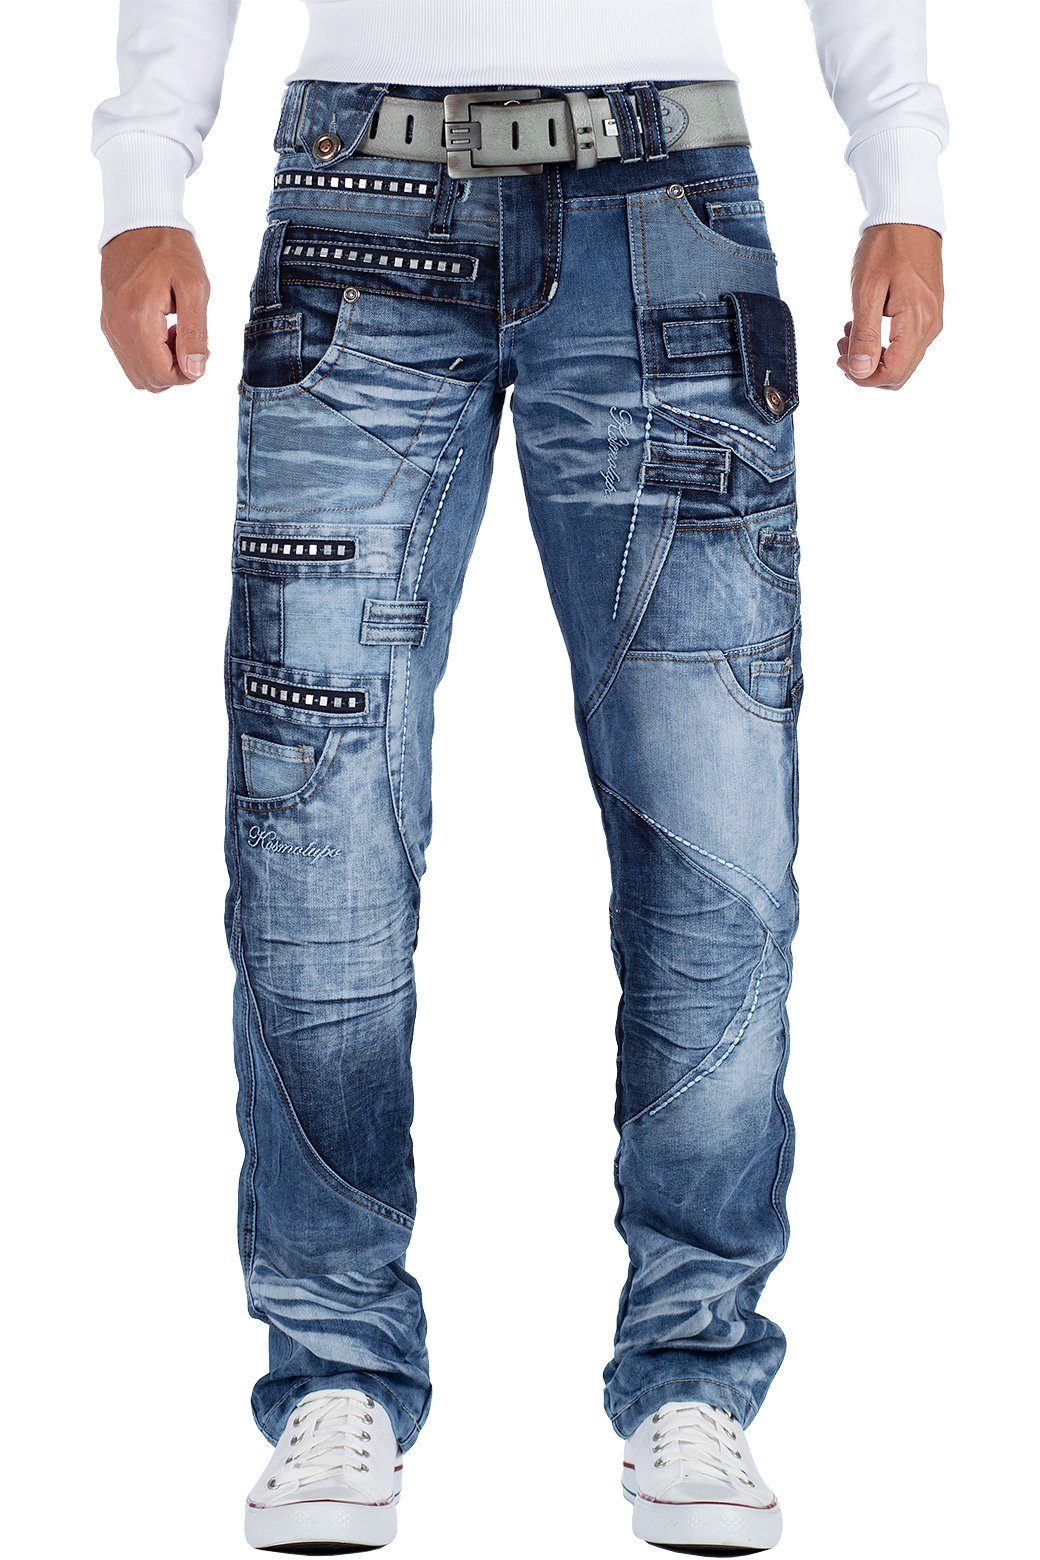 Kosmo Lupo 5-Pocket-Jeans Auffällige Herren Hose BA-KM001 mit Verzierungen und Nieten blau